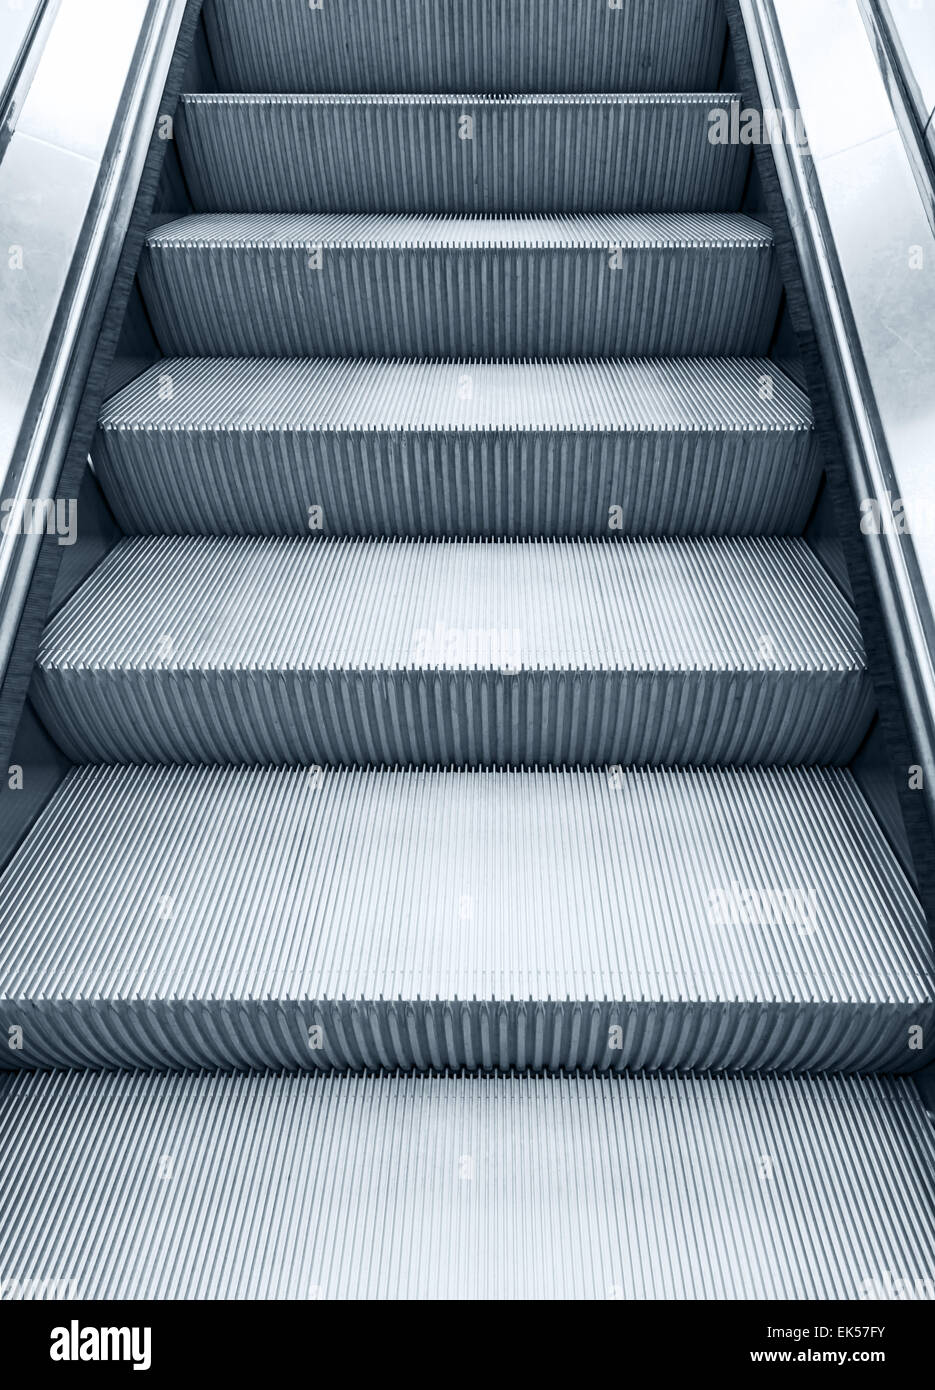 Métal brillant remonte, escalator photo monochrome vertical bleu avec effet de filtre de tonalité Banque D'Images